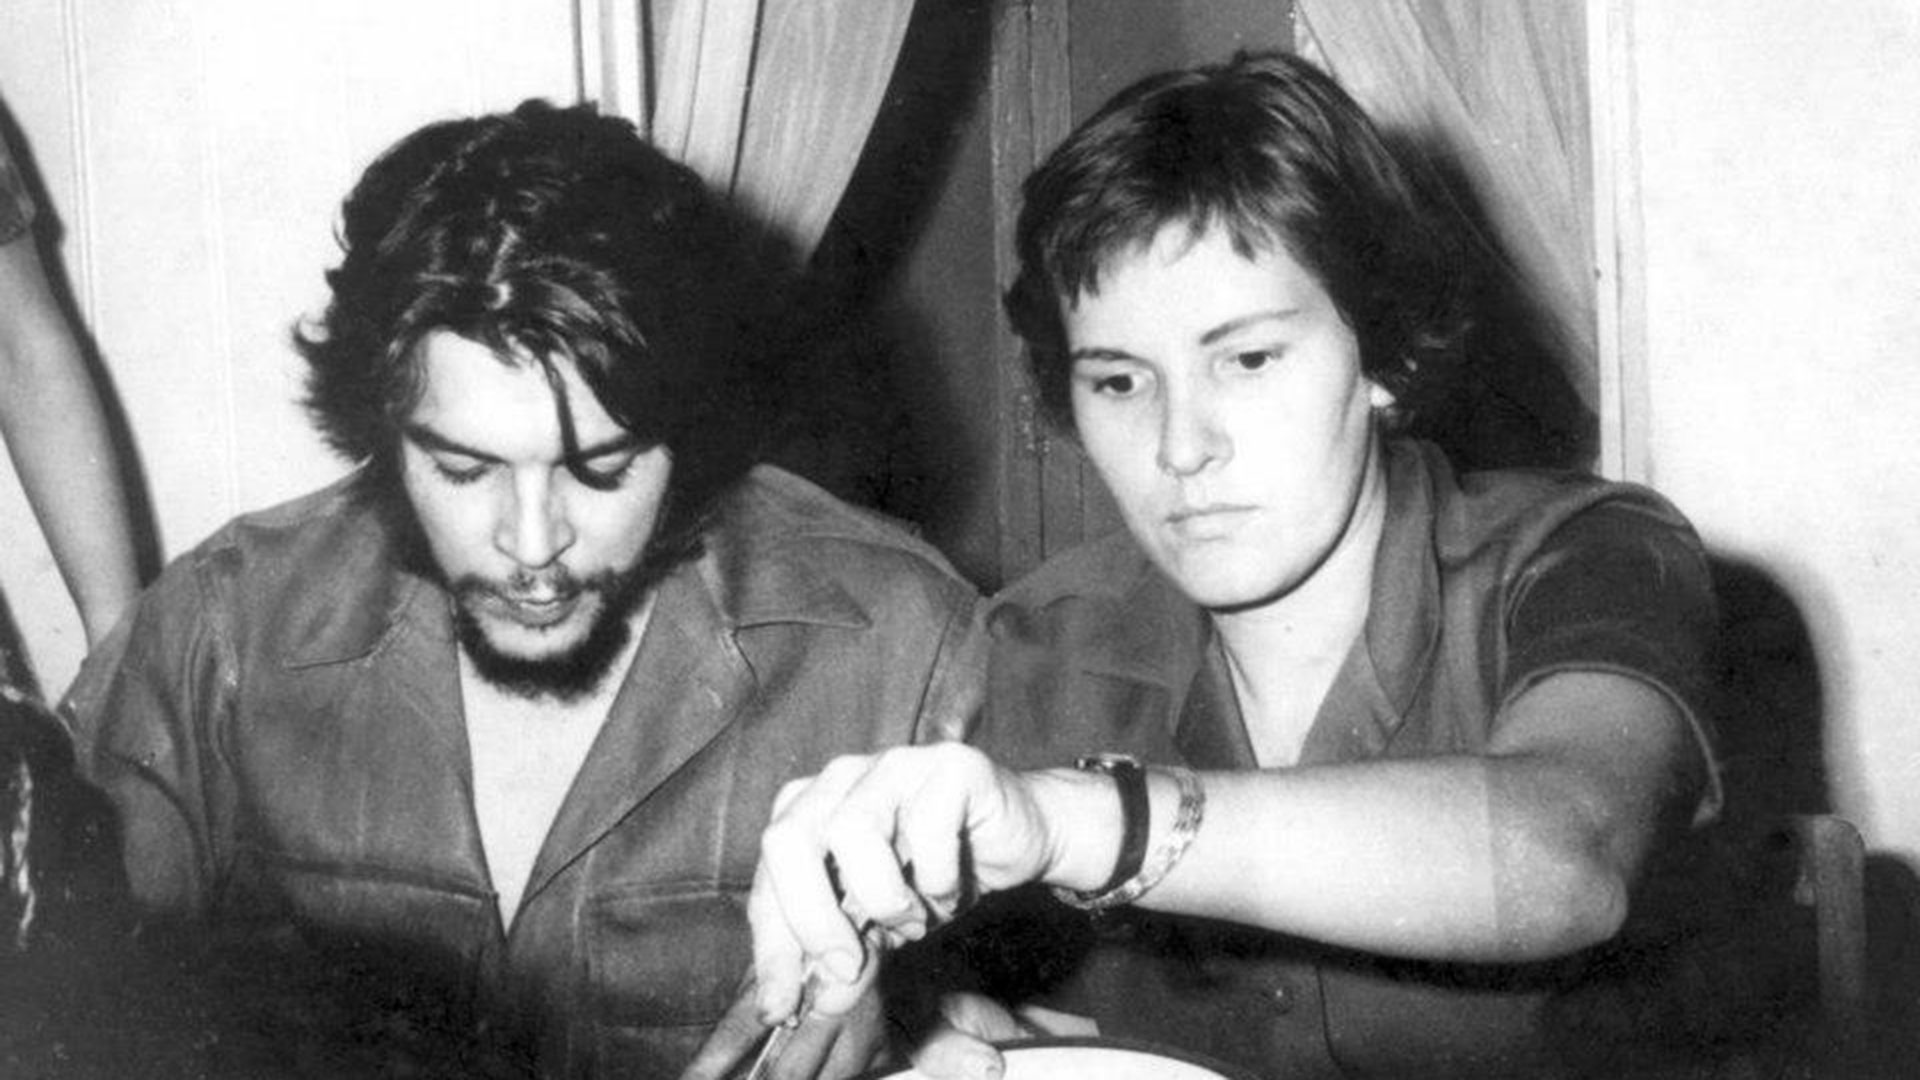 Cuando nos casamos sabías quién era yo”: las cartas, los celos y el amor  tormentoso del Che Guevara y Aleida March - Infobae